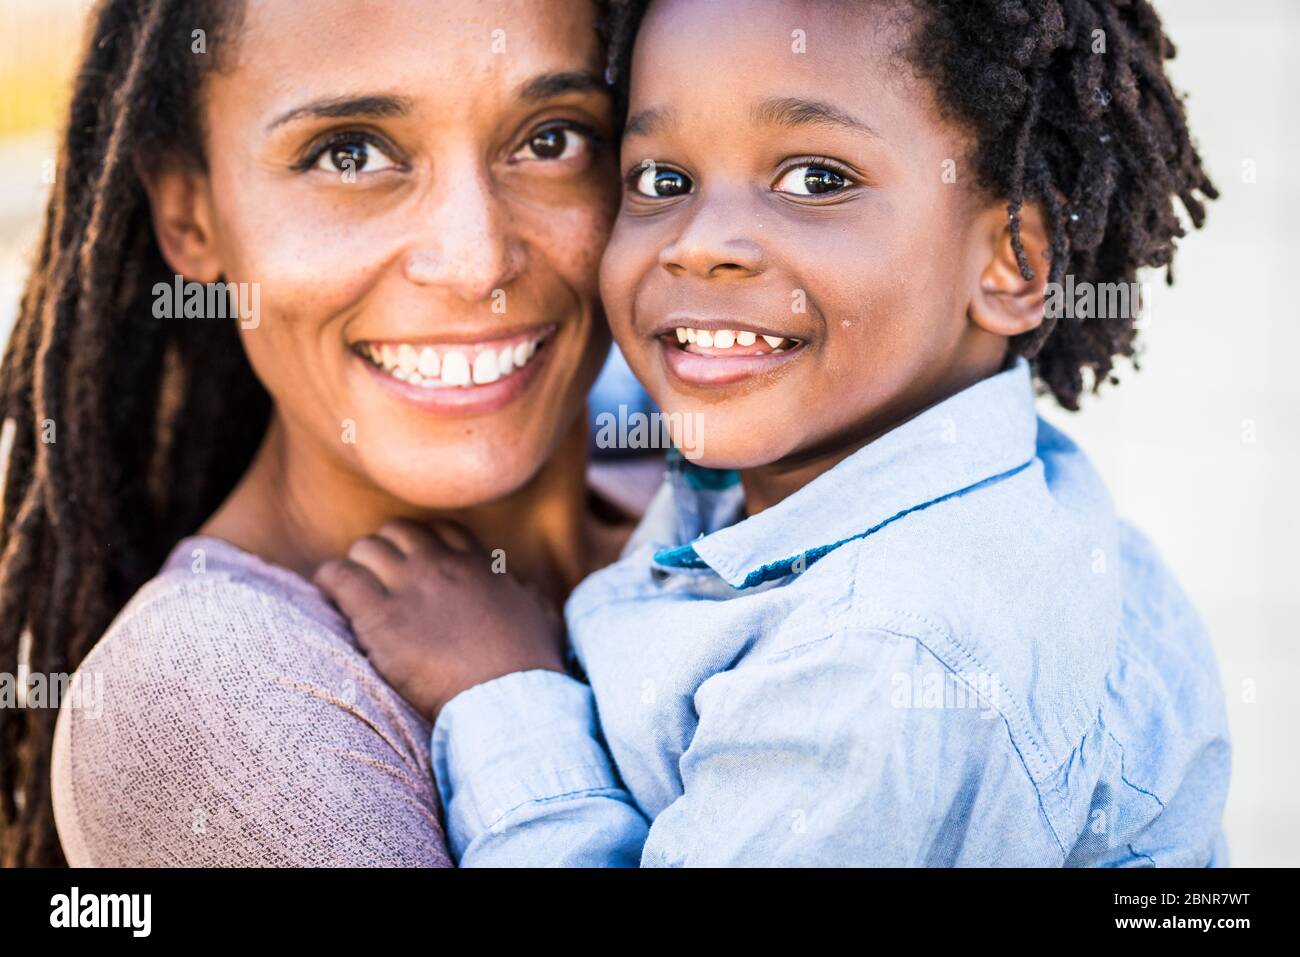 Ritratto di famiglia coppia madre e figlio nero afro razza etnica sorriso e guardare la fotocamera - concetto di diversità e mamma single con bambini piccoli - felicità e gioia concetto con amore - concentrarsi sugli occhi dei bambini Foto Stock